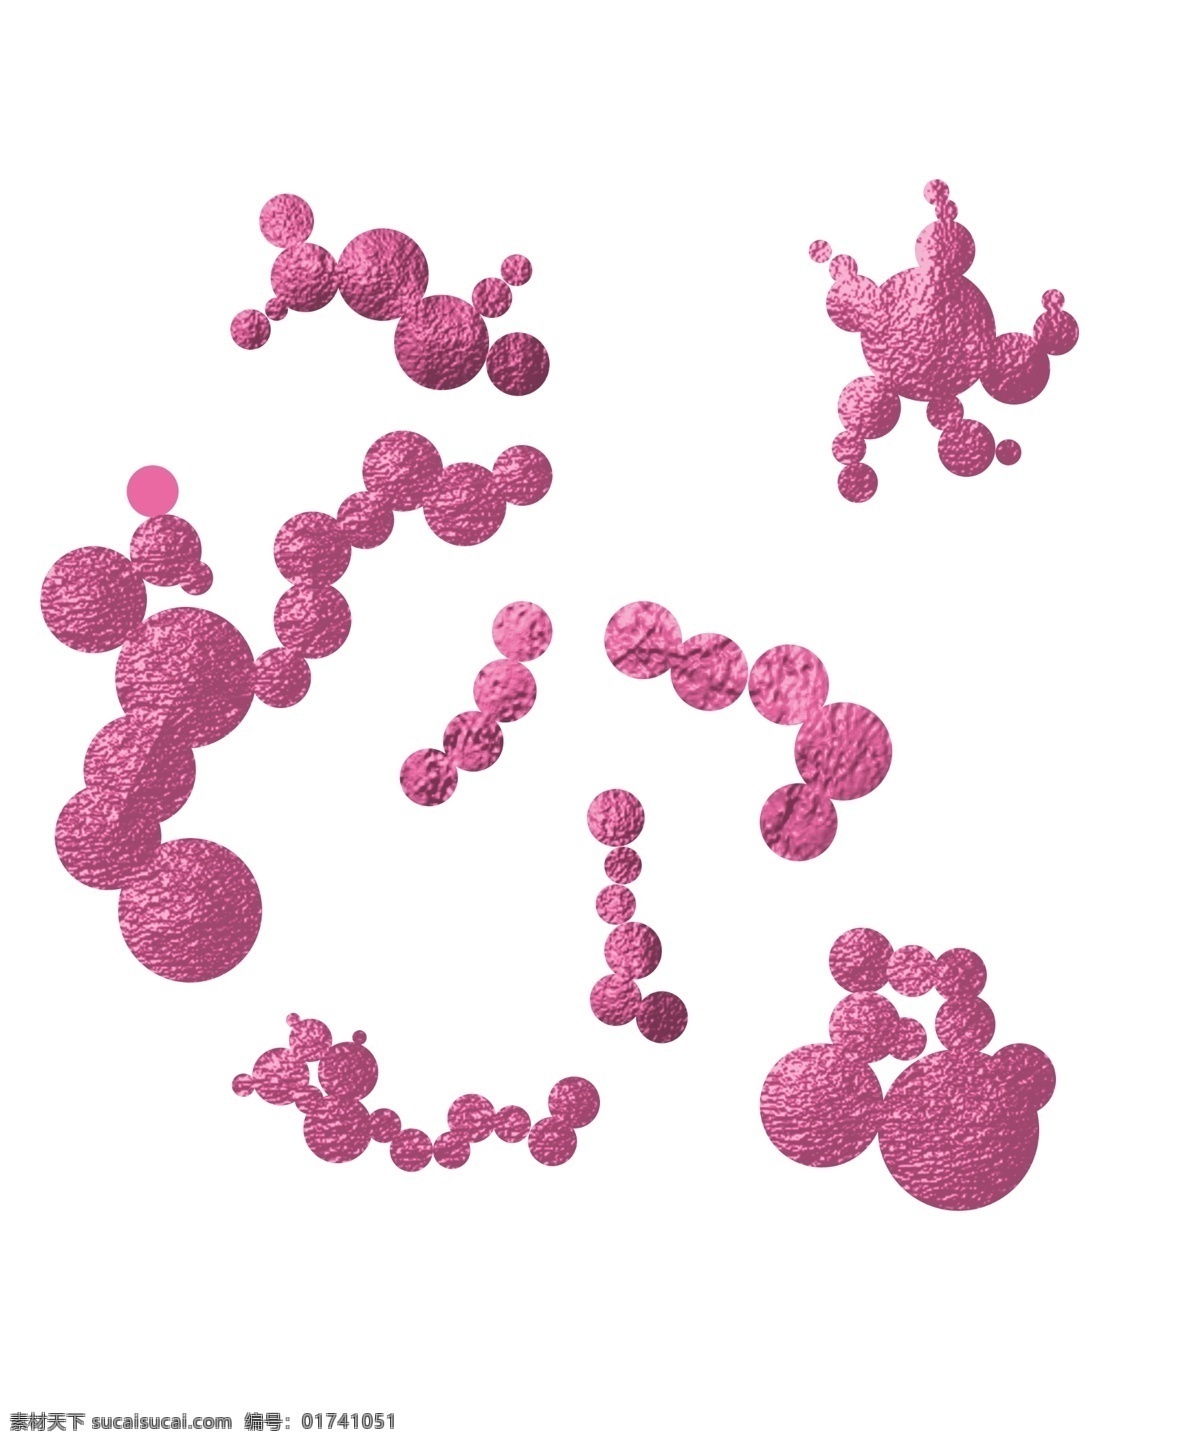 细菌 病毒 卡通 插画 紫色的细菌 卡通插画 细菌插画 原核生物 病菌 细胞膜 人体的细菌